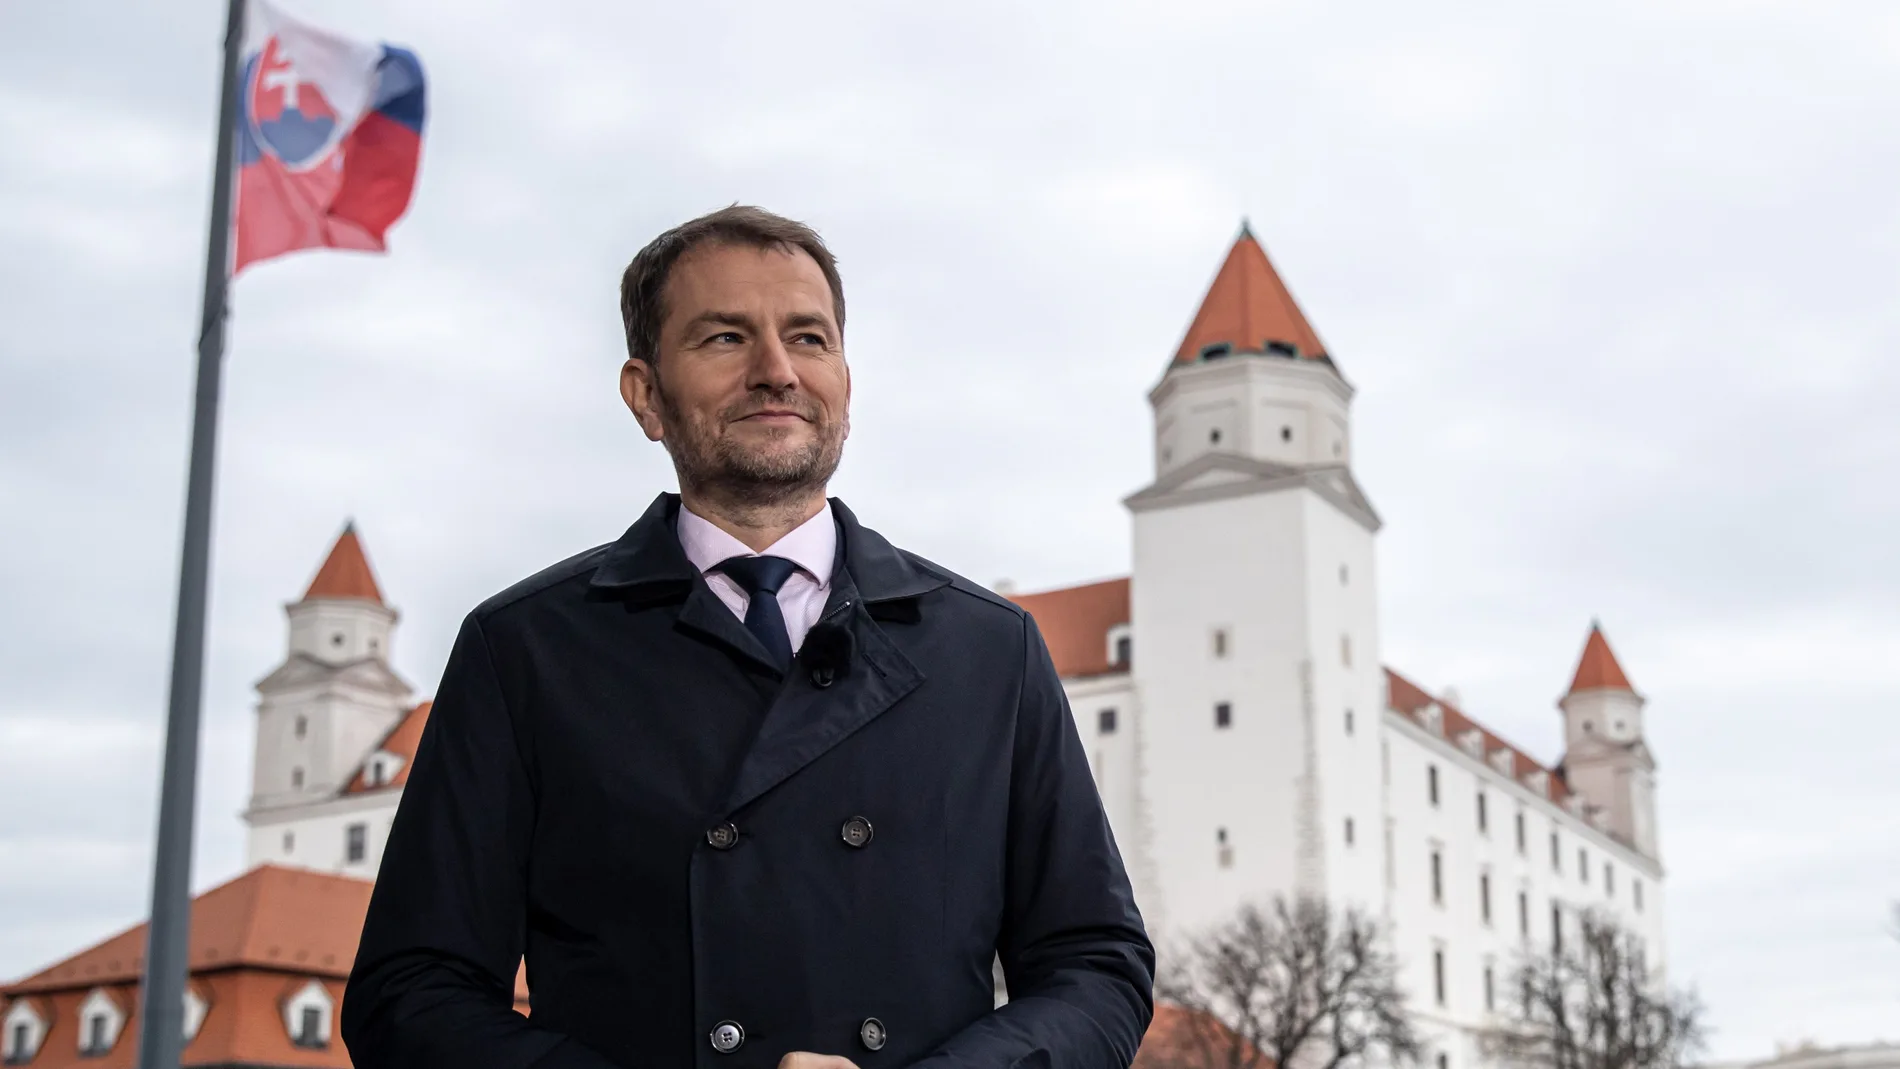 Slovakia's parliamentary election 2020